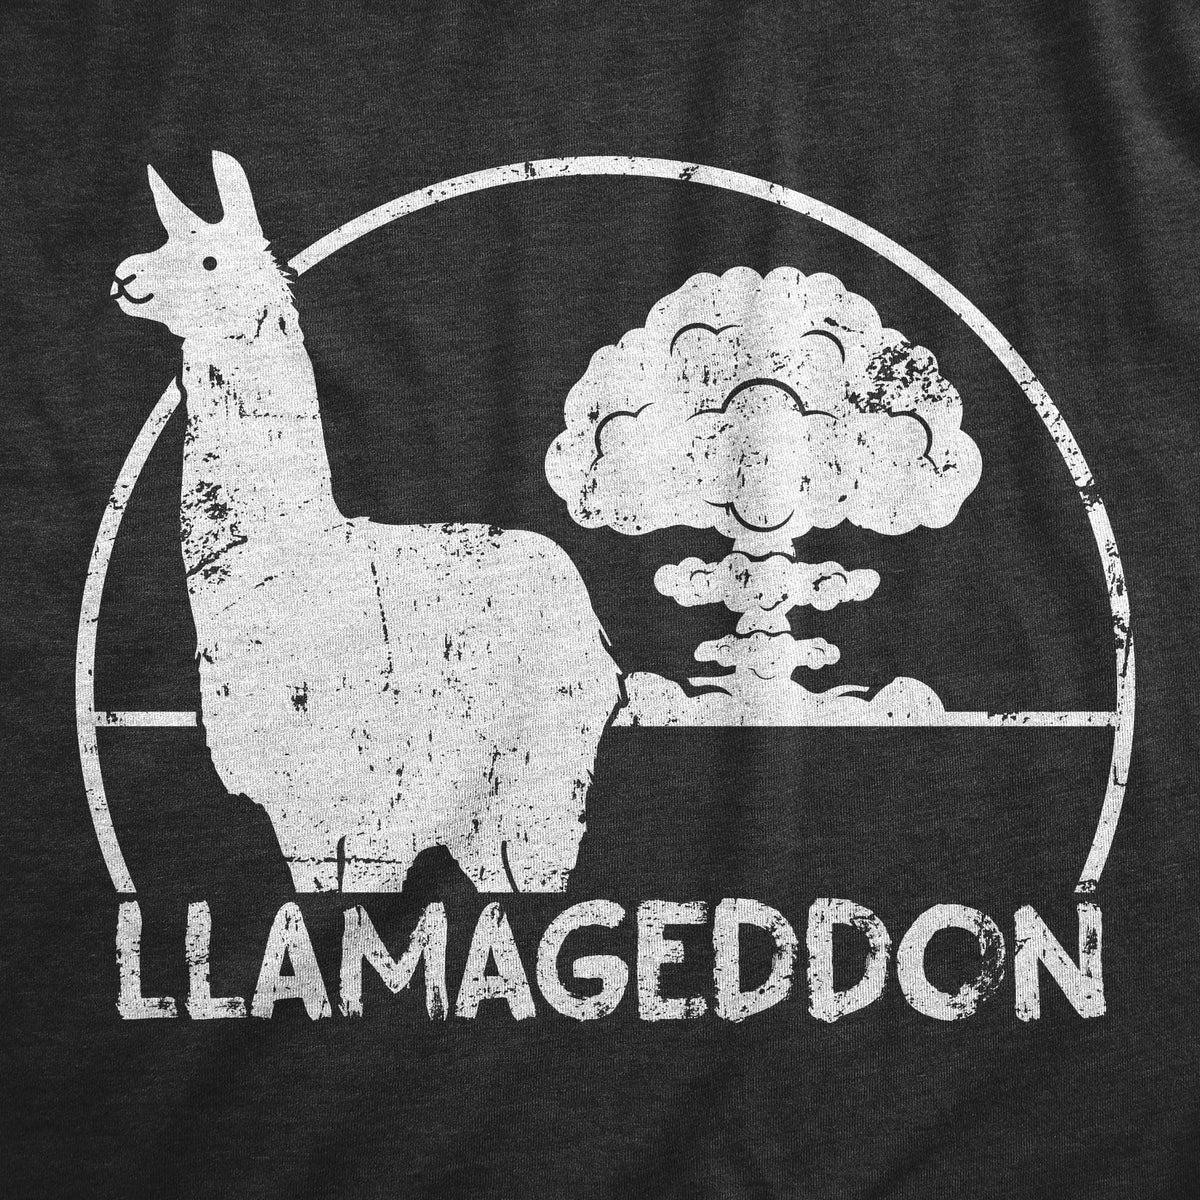 Llamageddon Women&#39;s Tshirt  -  Crazy Dog T-Shirts